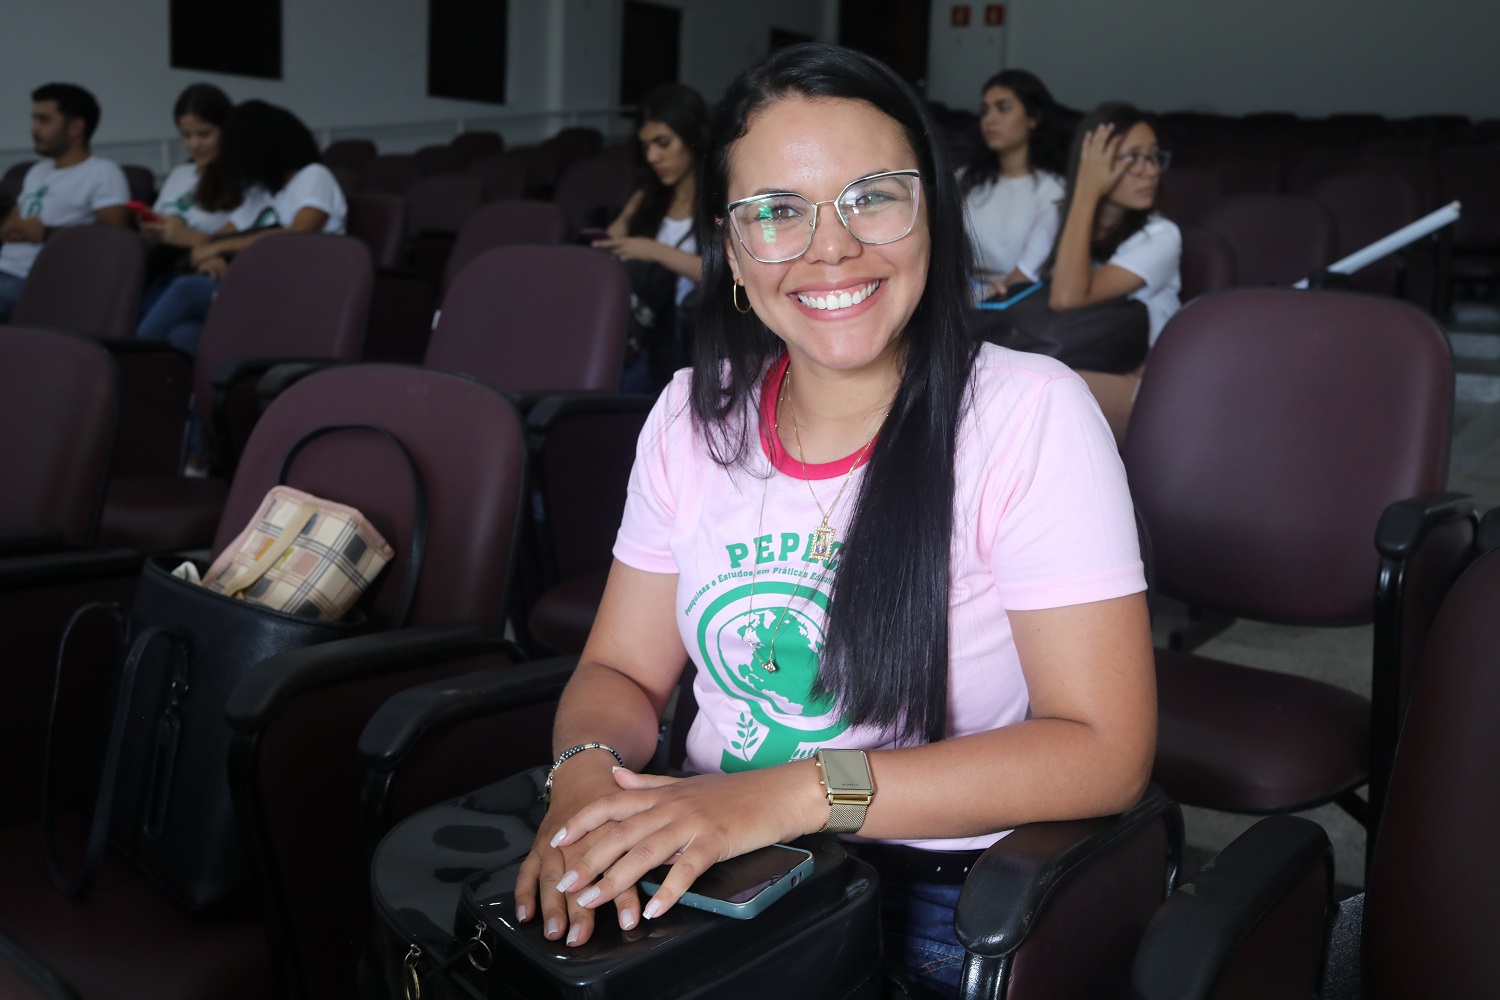  Laudemila dos Santos é aluna de Pedagogia do Campus de Itabaiana. (foto: Adilson Andrade/Ascom UFS)